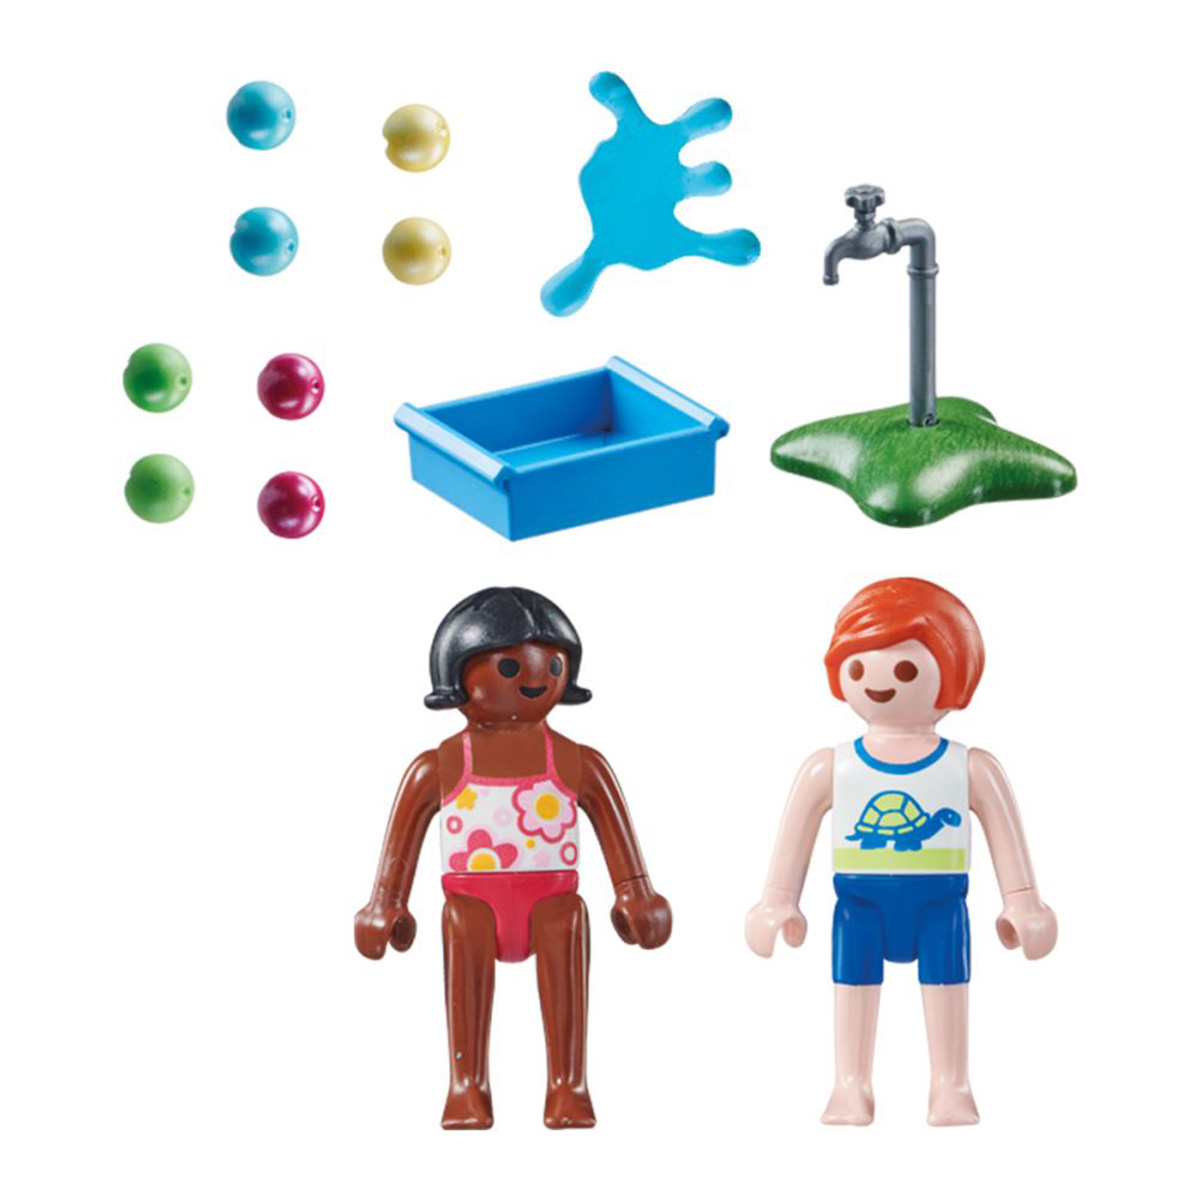 Playmobil - Crianças com Balões de Água - Special Plus 71166